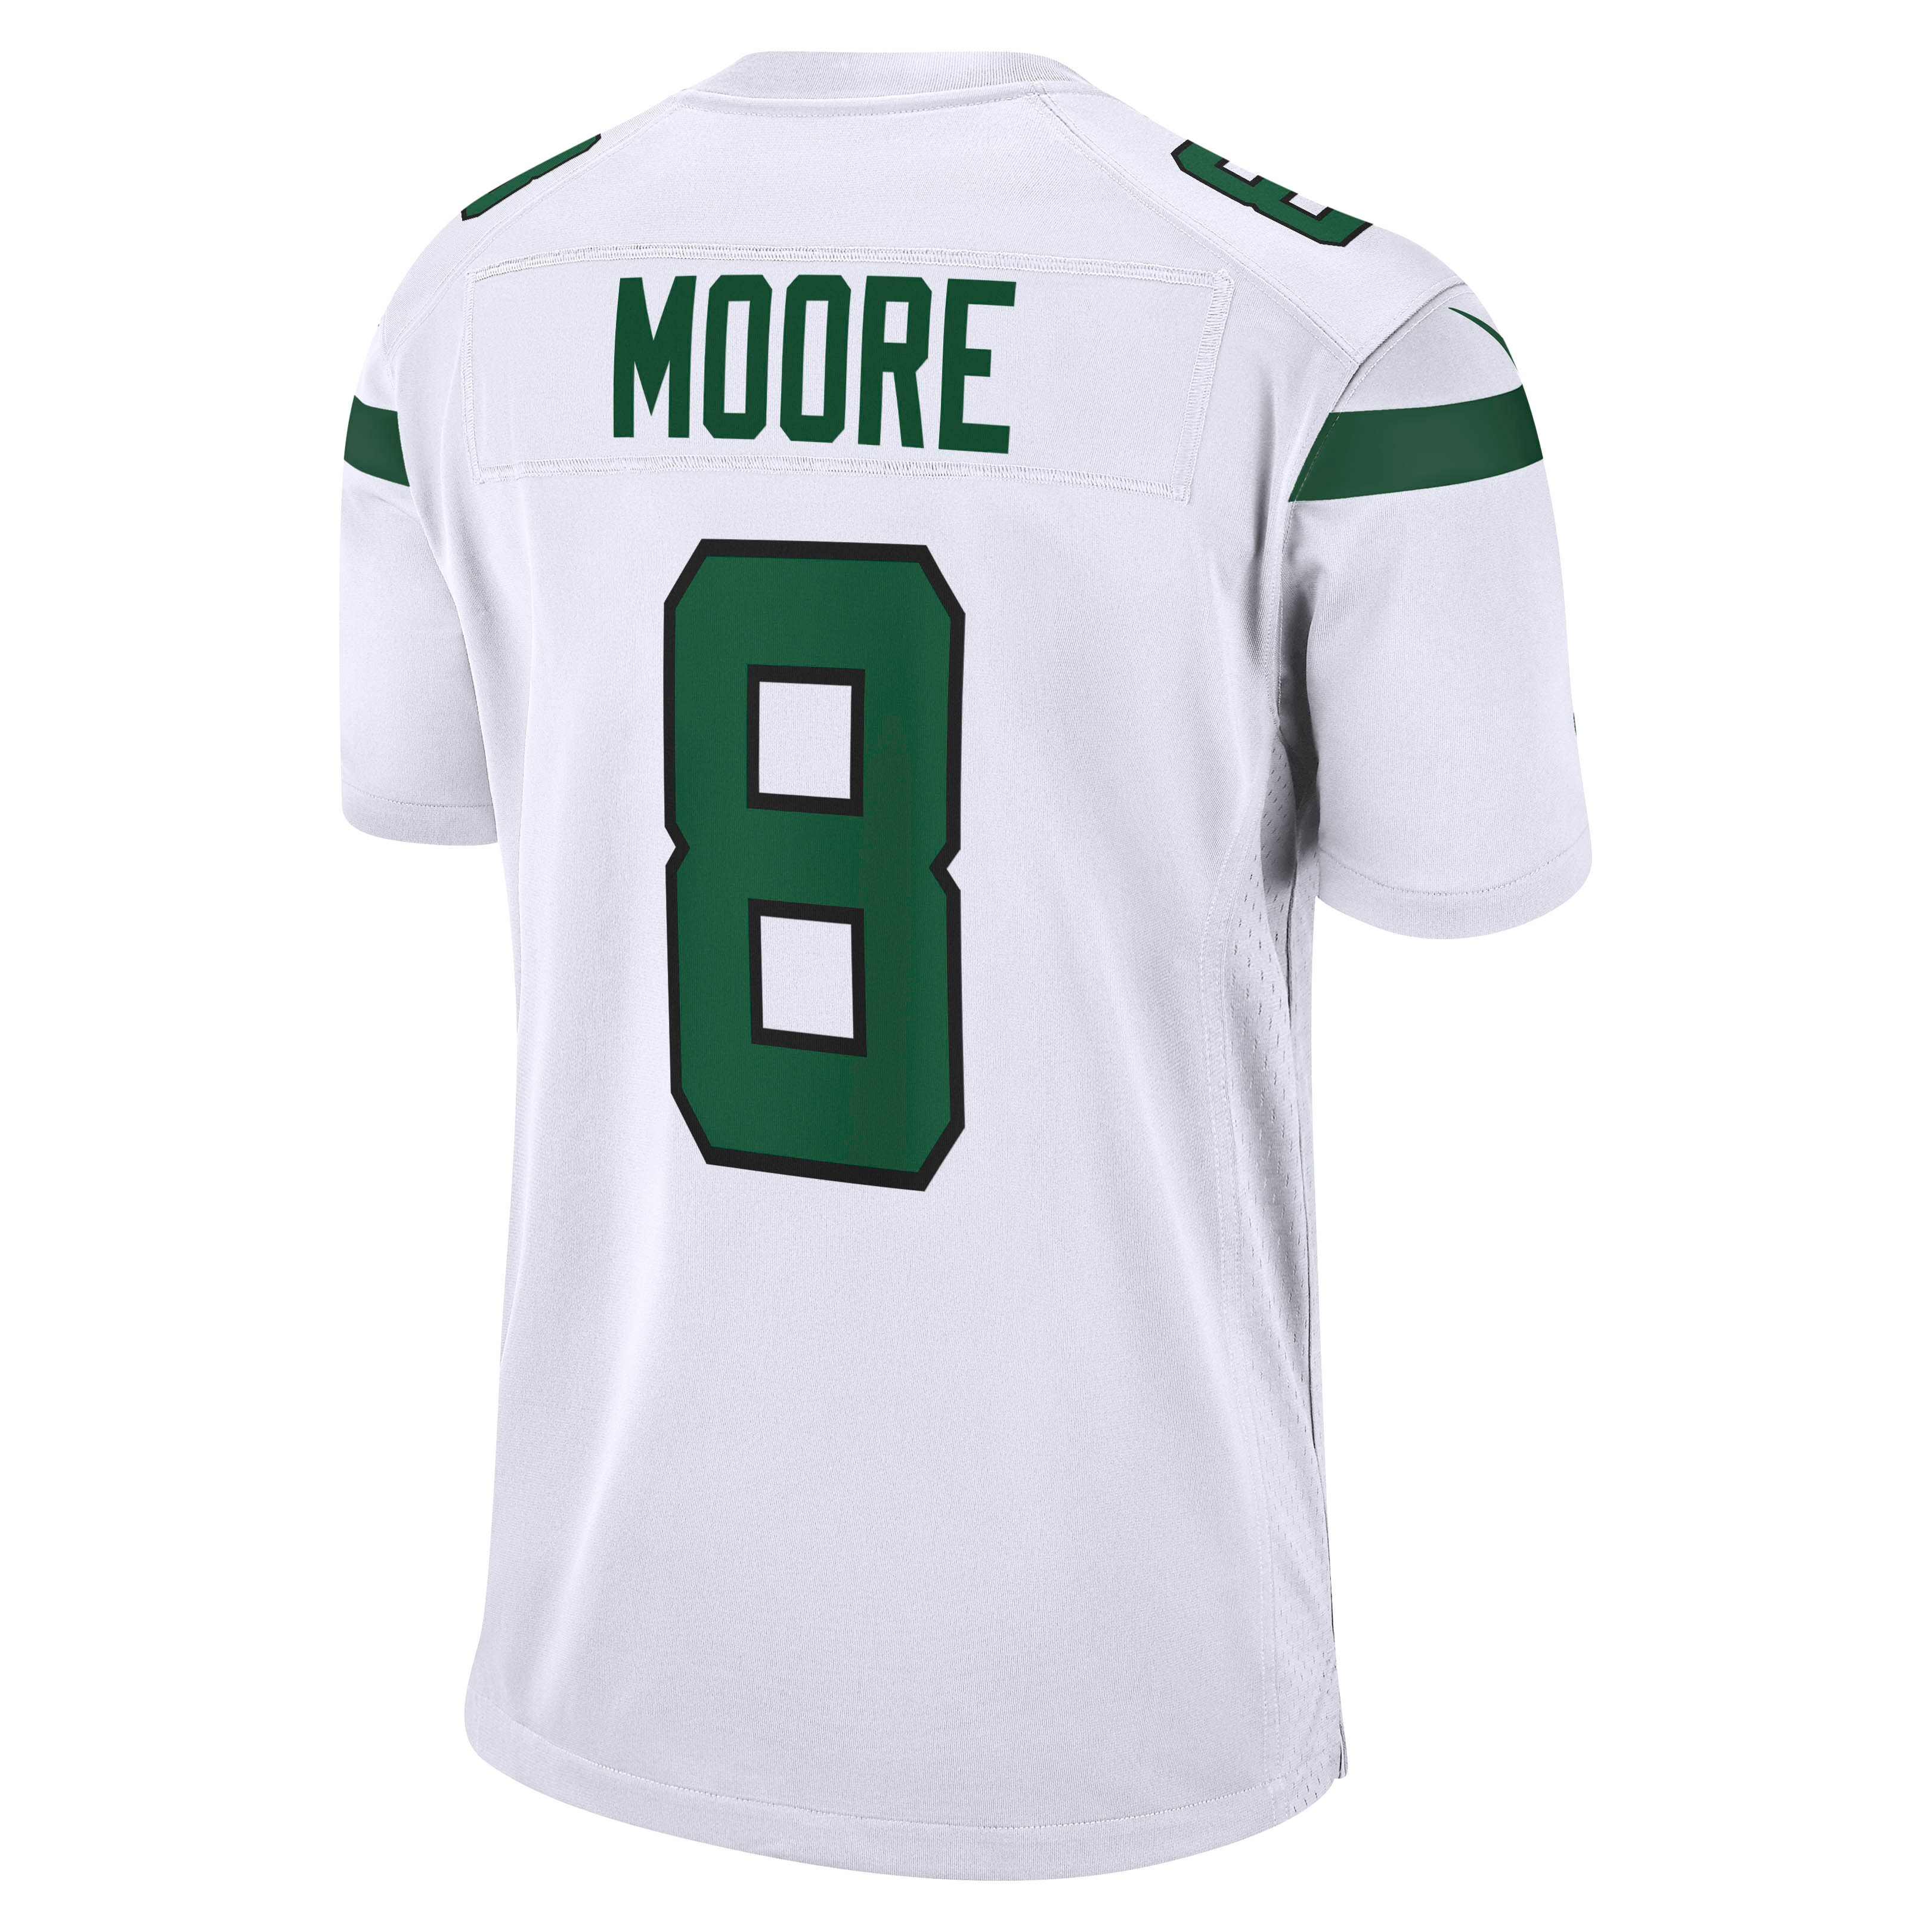 Men's New York Jets Elijah Moore Nike White Game Jersey